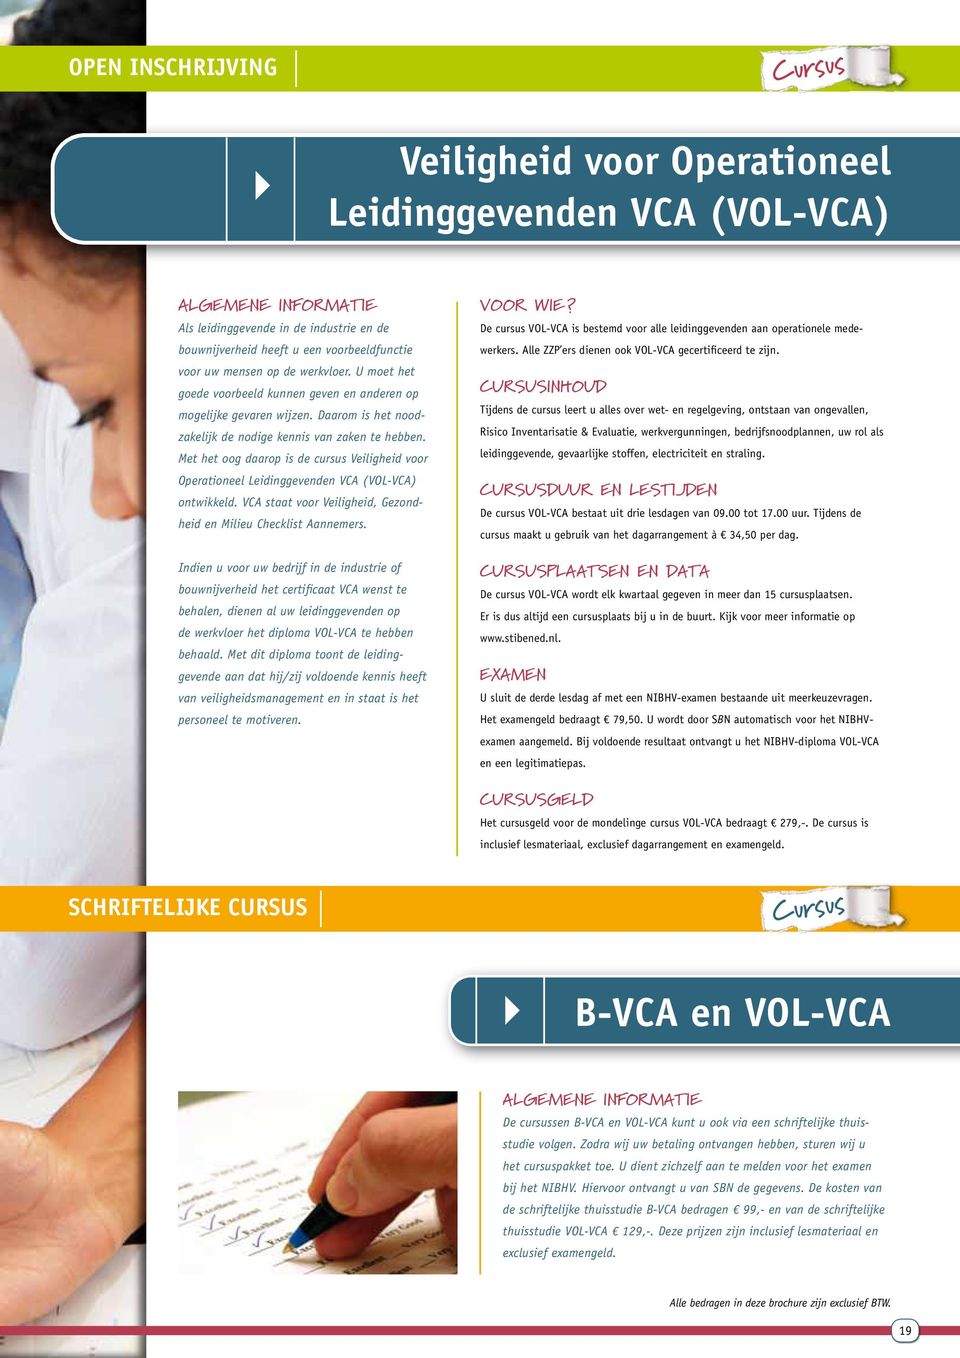 Met het oog daarop is de cursus Veiligheid voor Operationeel Leiding gevenden VCA (VOL-VCA) ontwikkeld. VCA staat voor Veiligheid, Gezondheid en Milieu Checklist Aannemers.